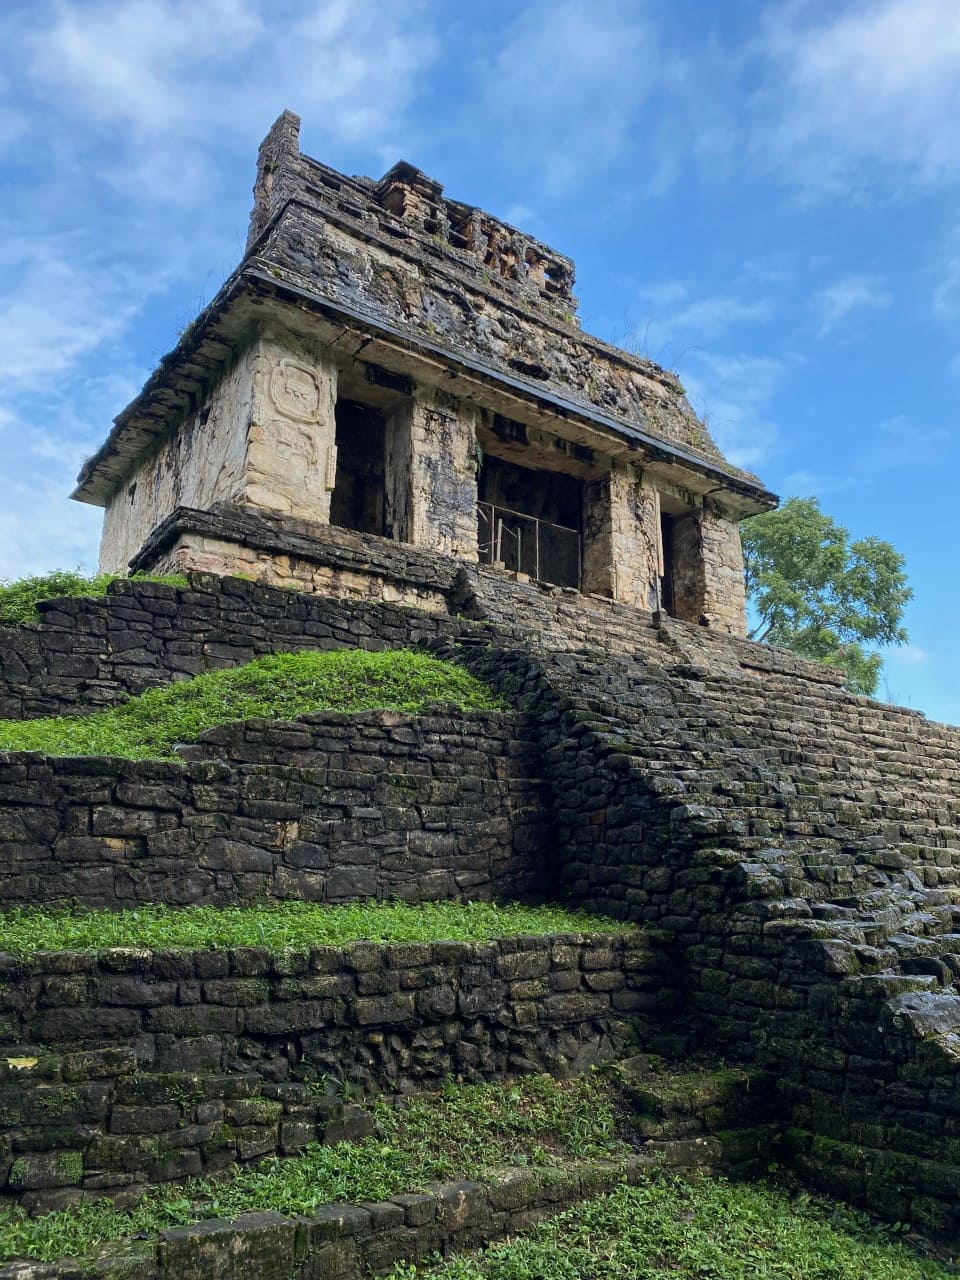 Ruines de Palenque, Mexique (Chiapas)